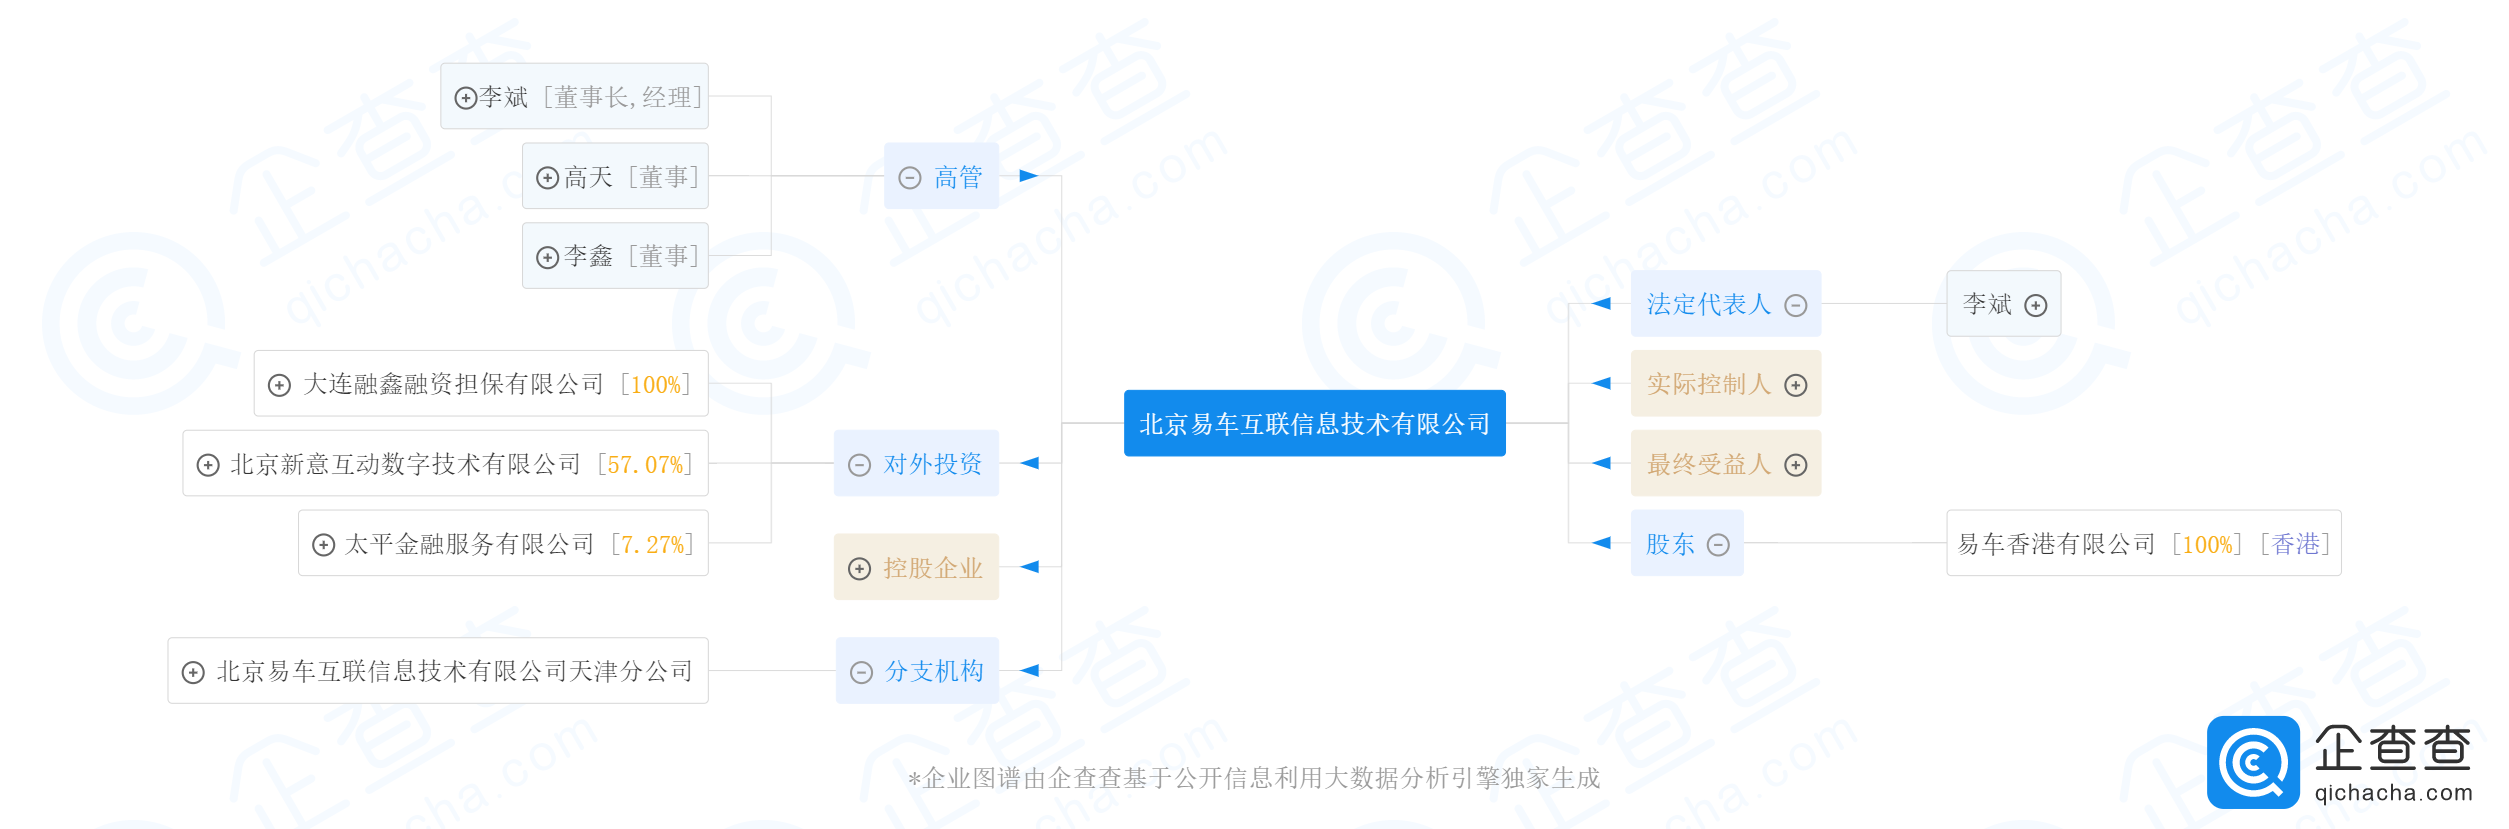 北京易车互联信息技术有限公司-企业图谱-2019-09-14.png